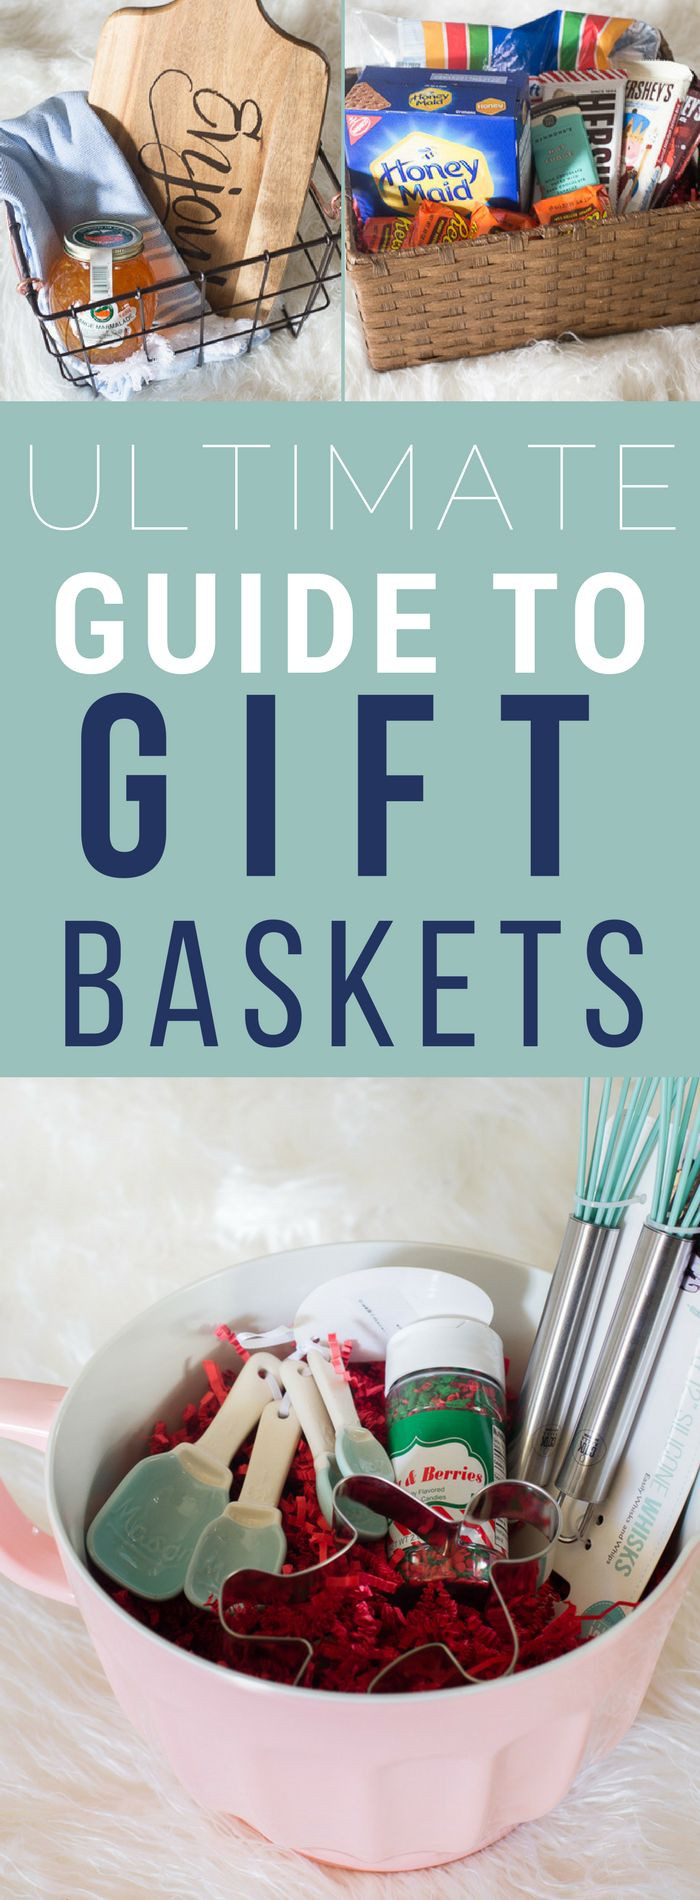 Gift Basket Ideas Under $20
 Creative Gift Basket Ideas Under $20